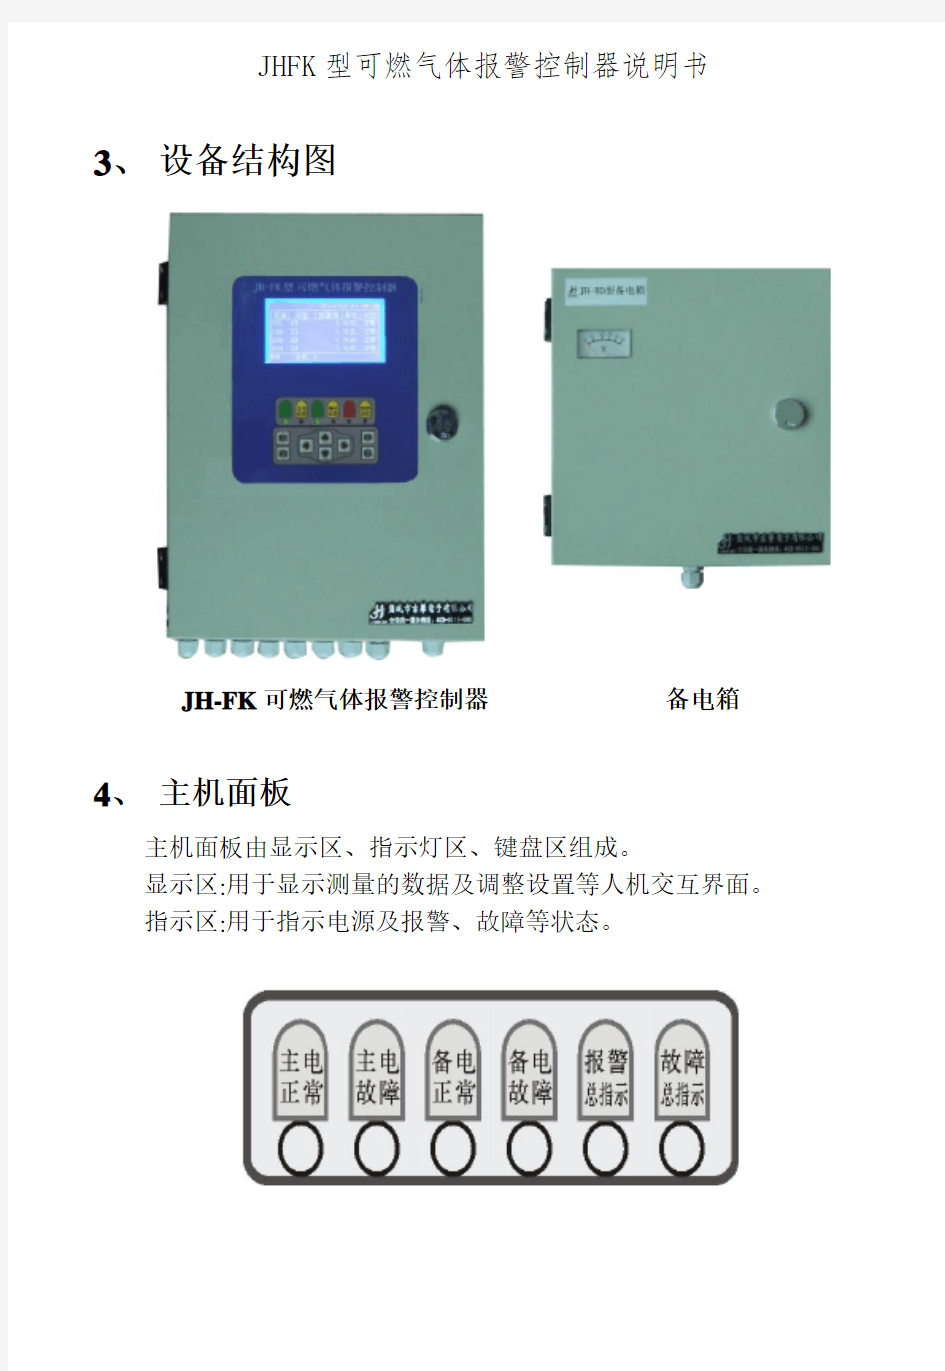 JHFK型可燃气体报警控制器说明书